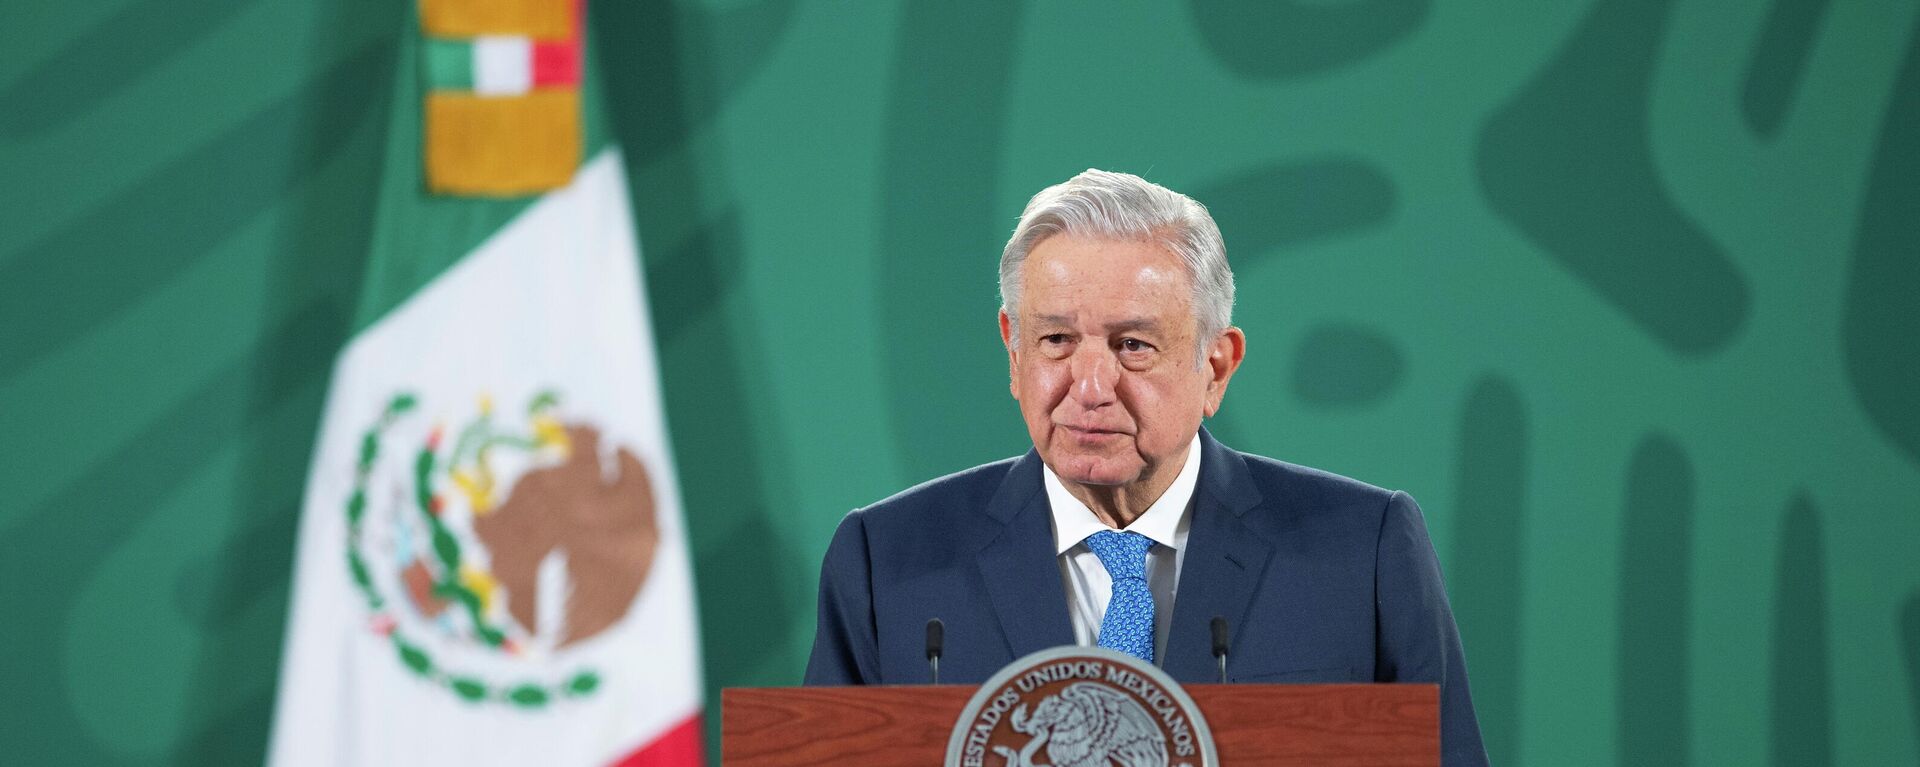 Andrés Manuel López Obrador, presidente de México - Sputnik Mundo, 1920, 16.03.2021